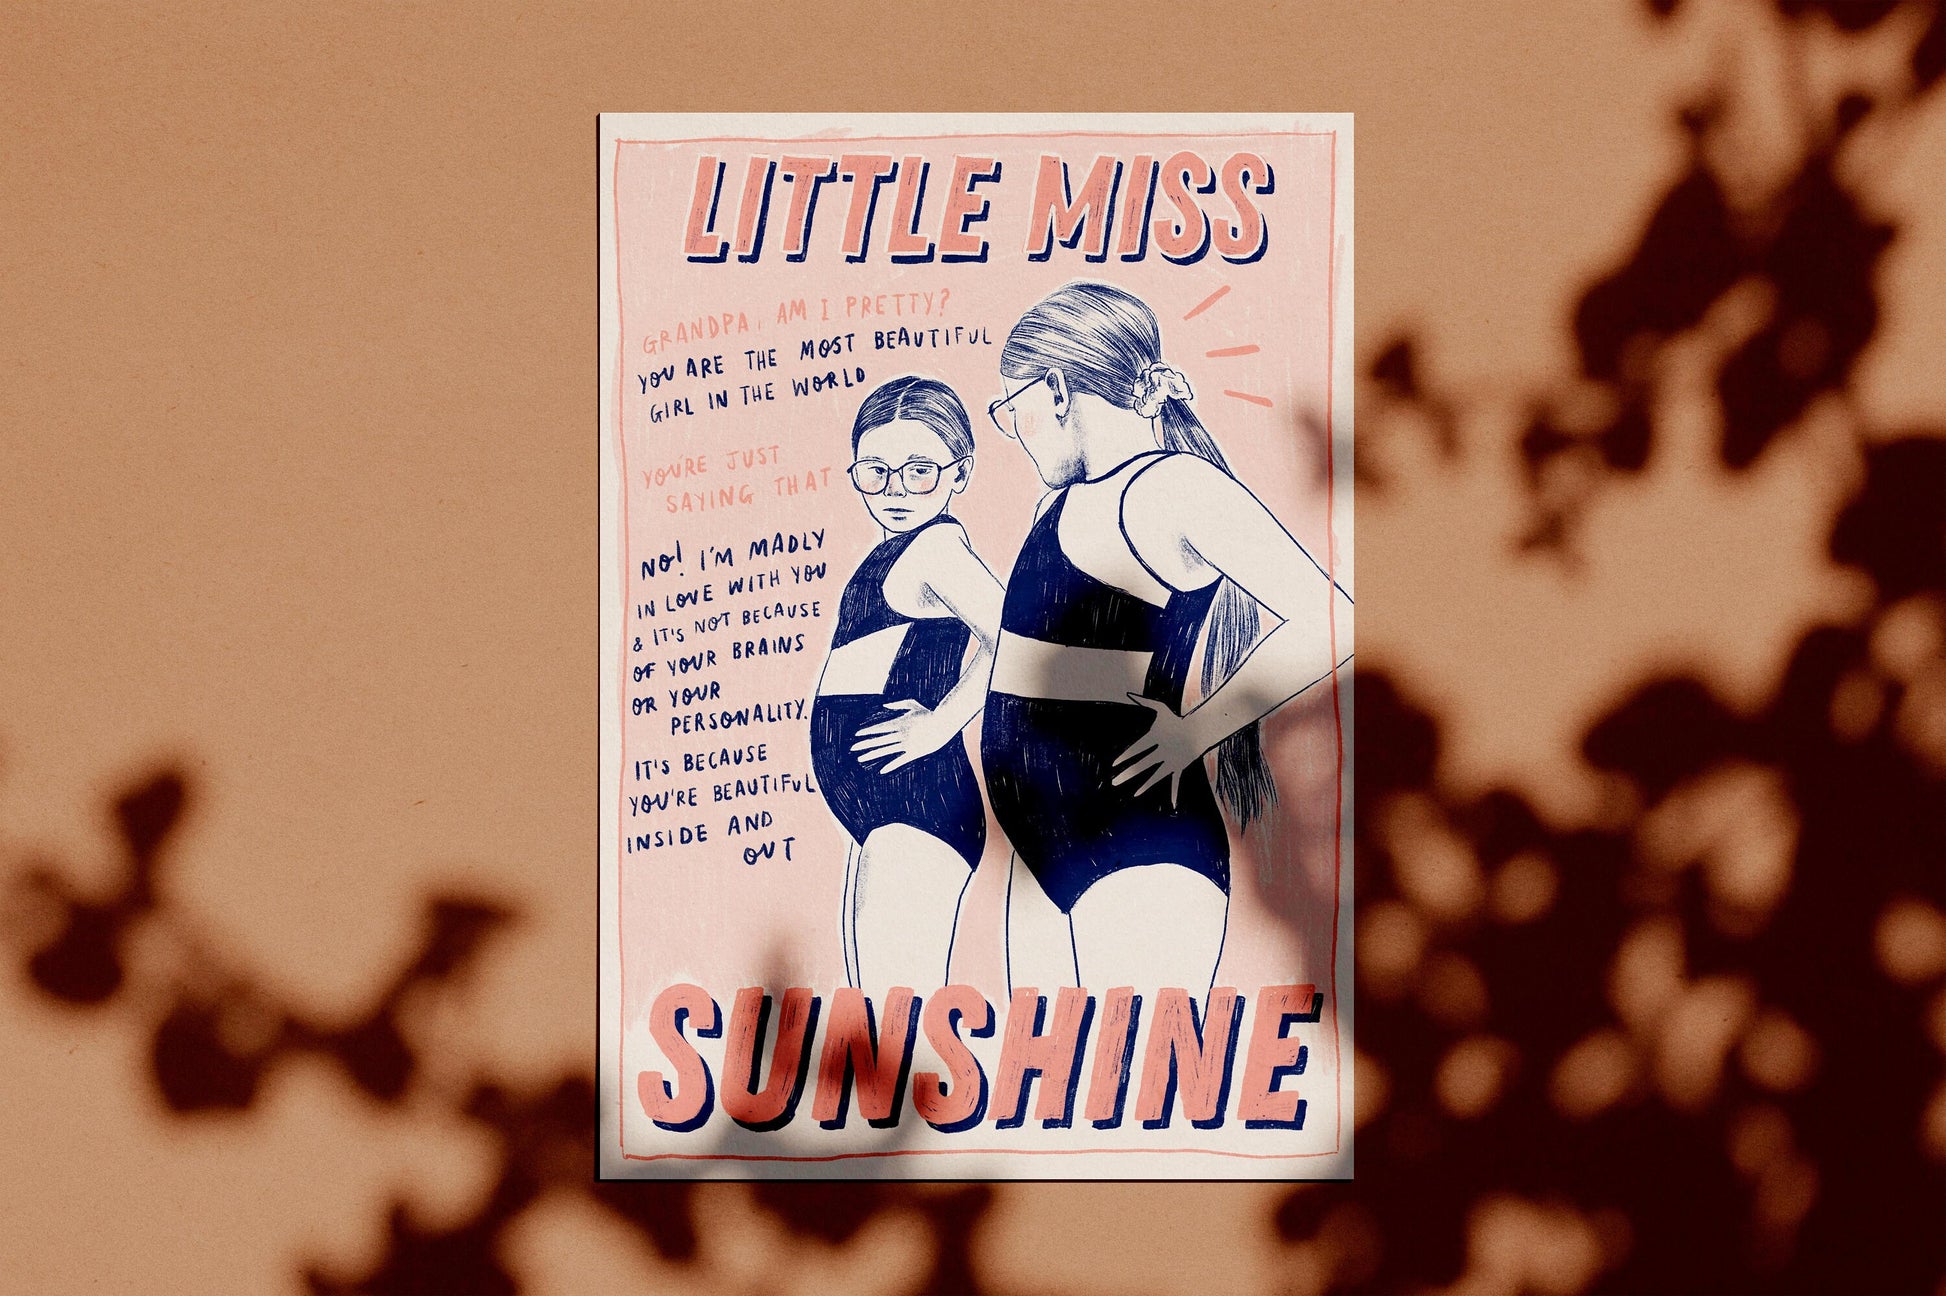 Little Miss Sunshine A4 Art Print